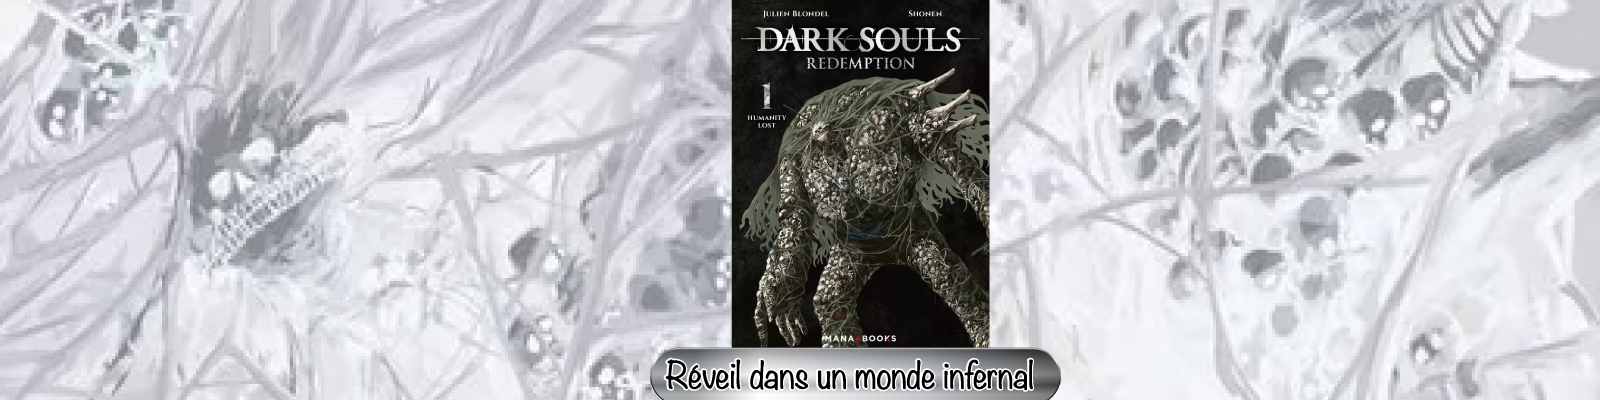 Dark Souls Redemption